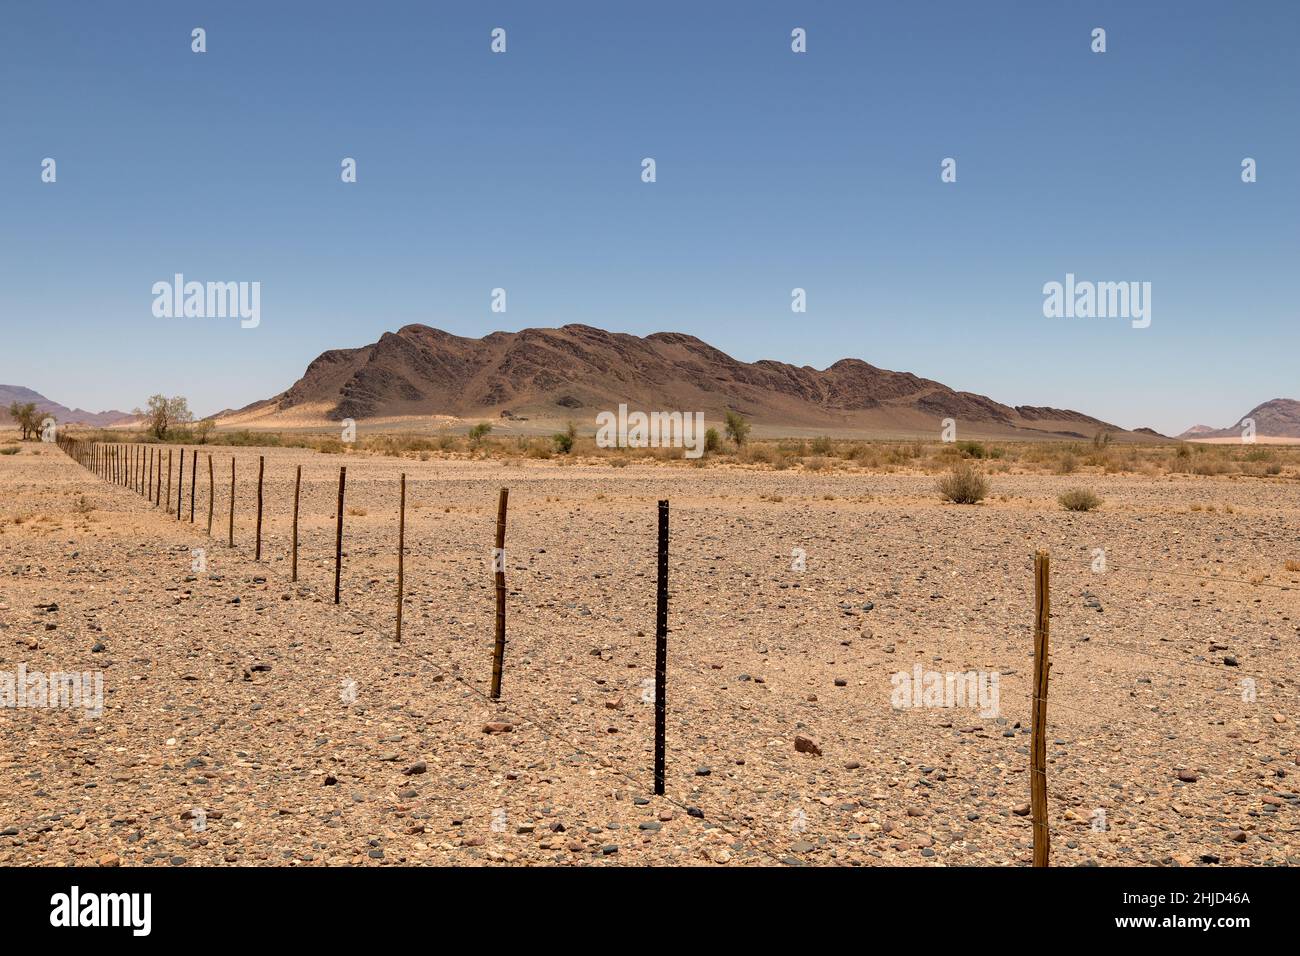 Namibian Landscape Stock Photo